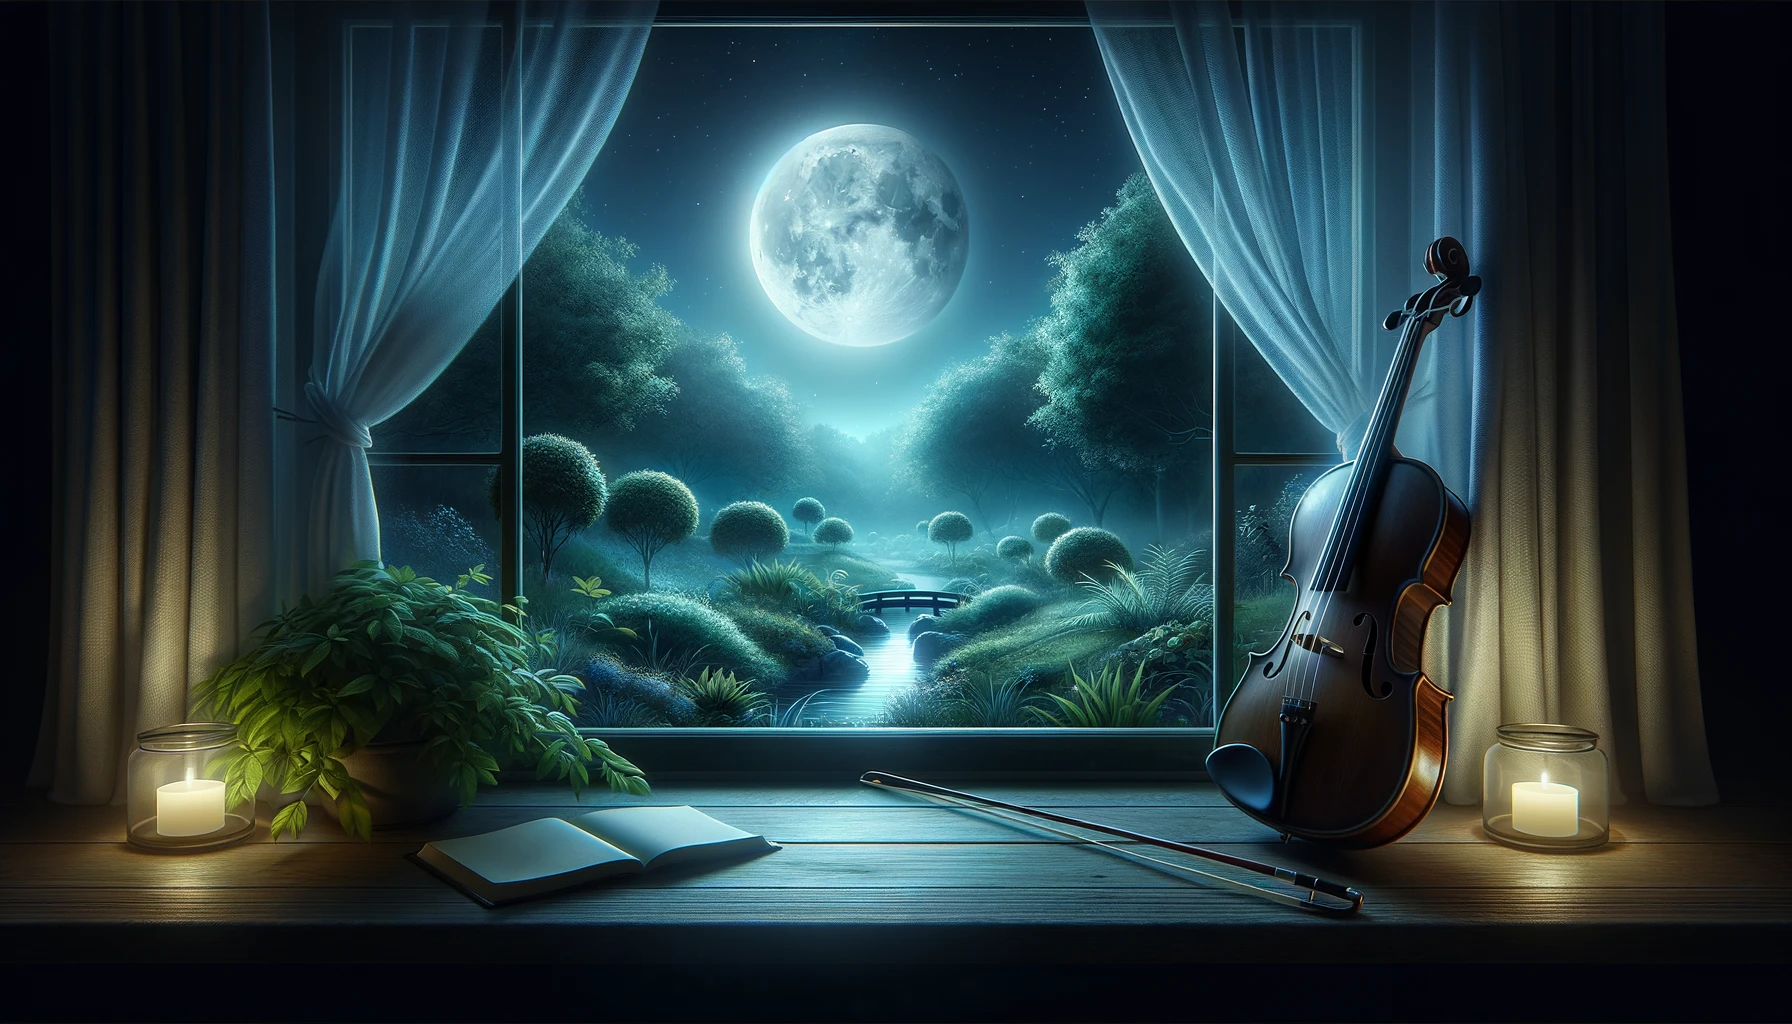 穏やかな夜、窓辺のバイオリンと静寂に包まれた庭を映し出す月明かりの風景